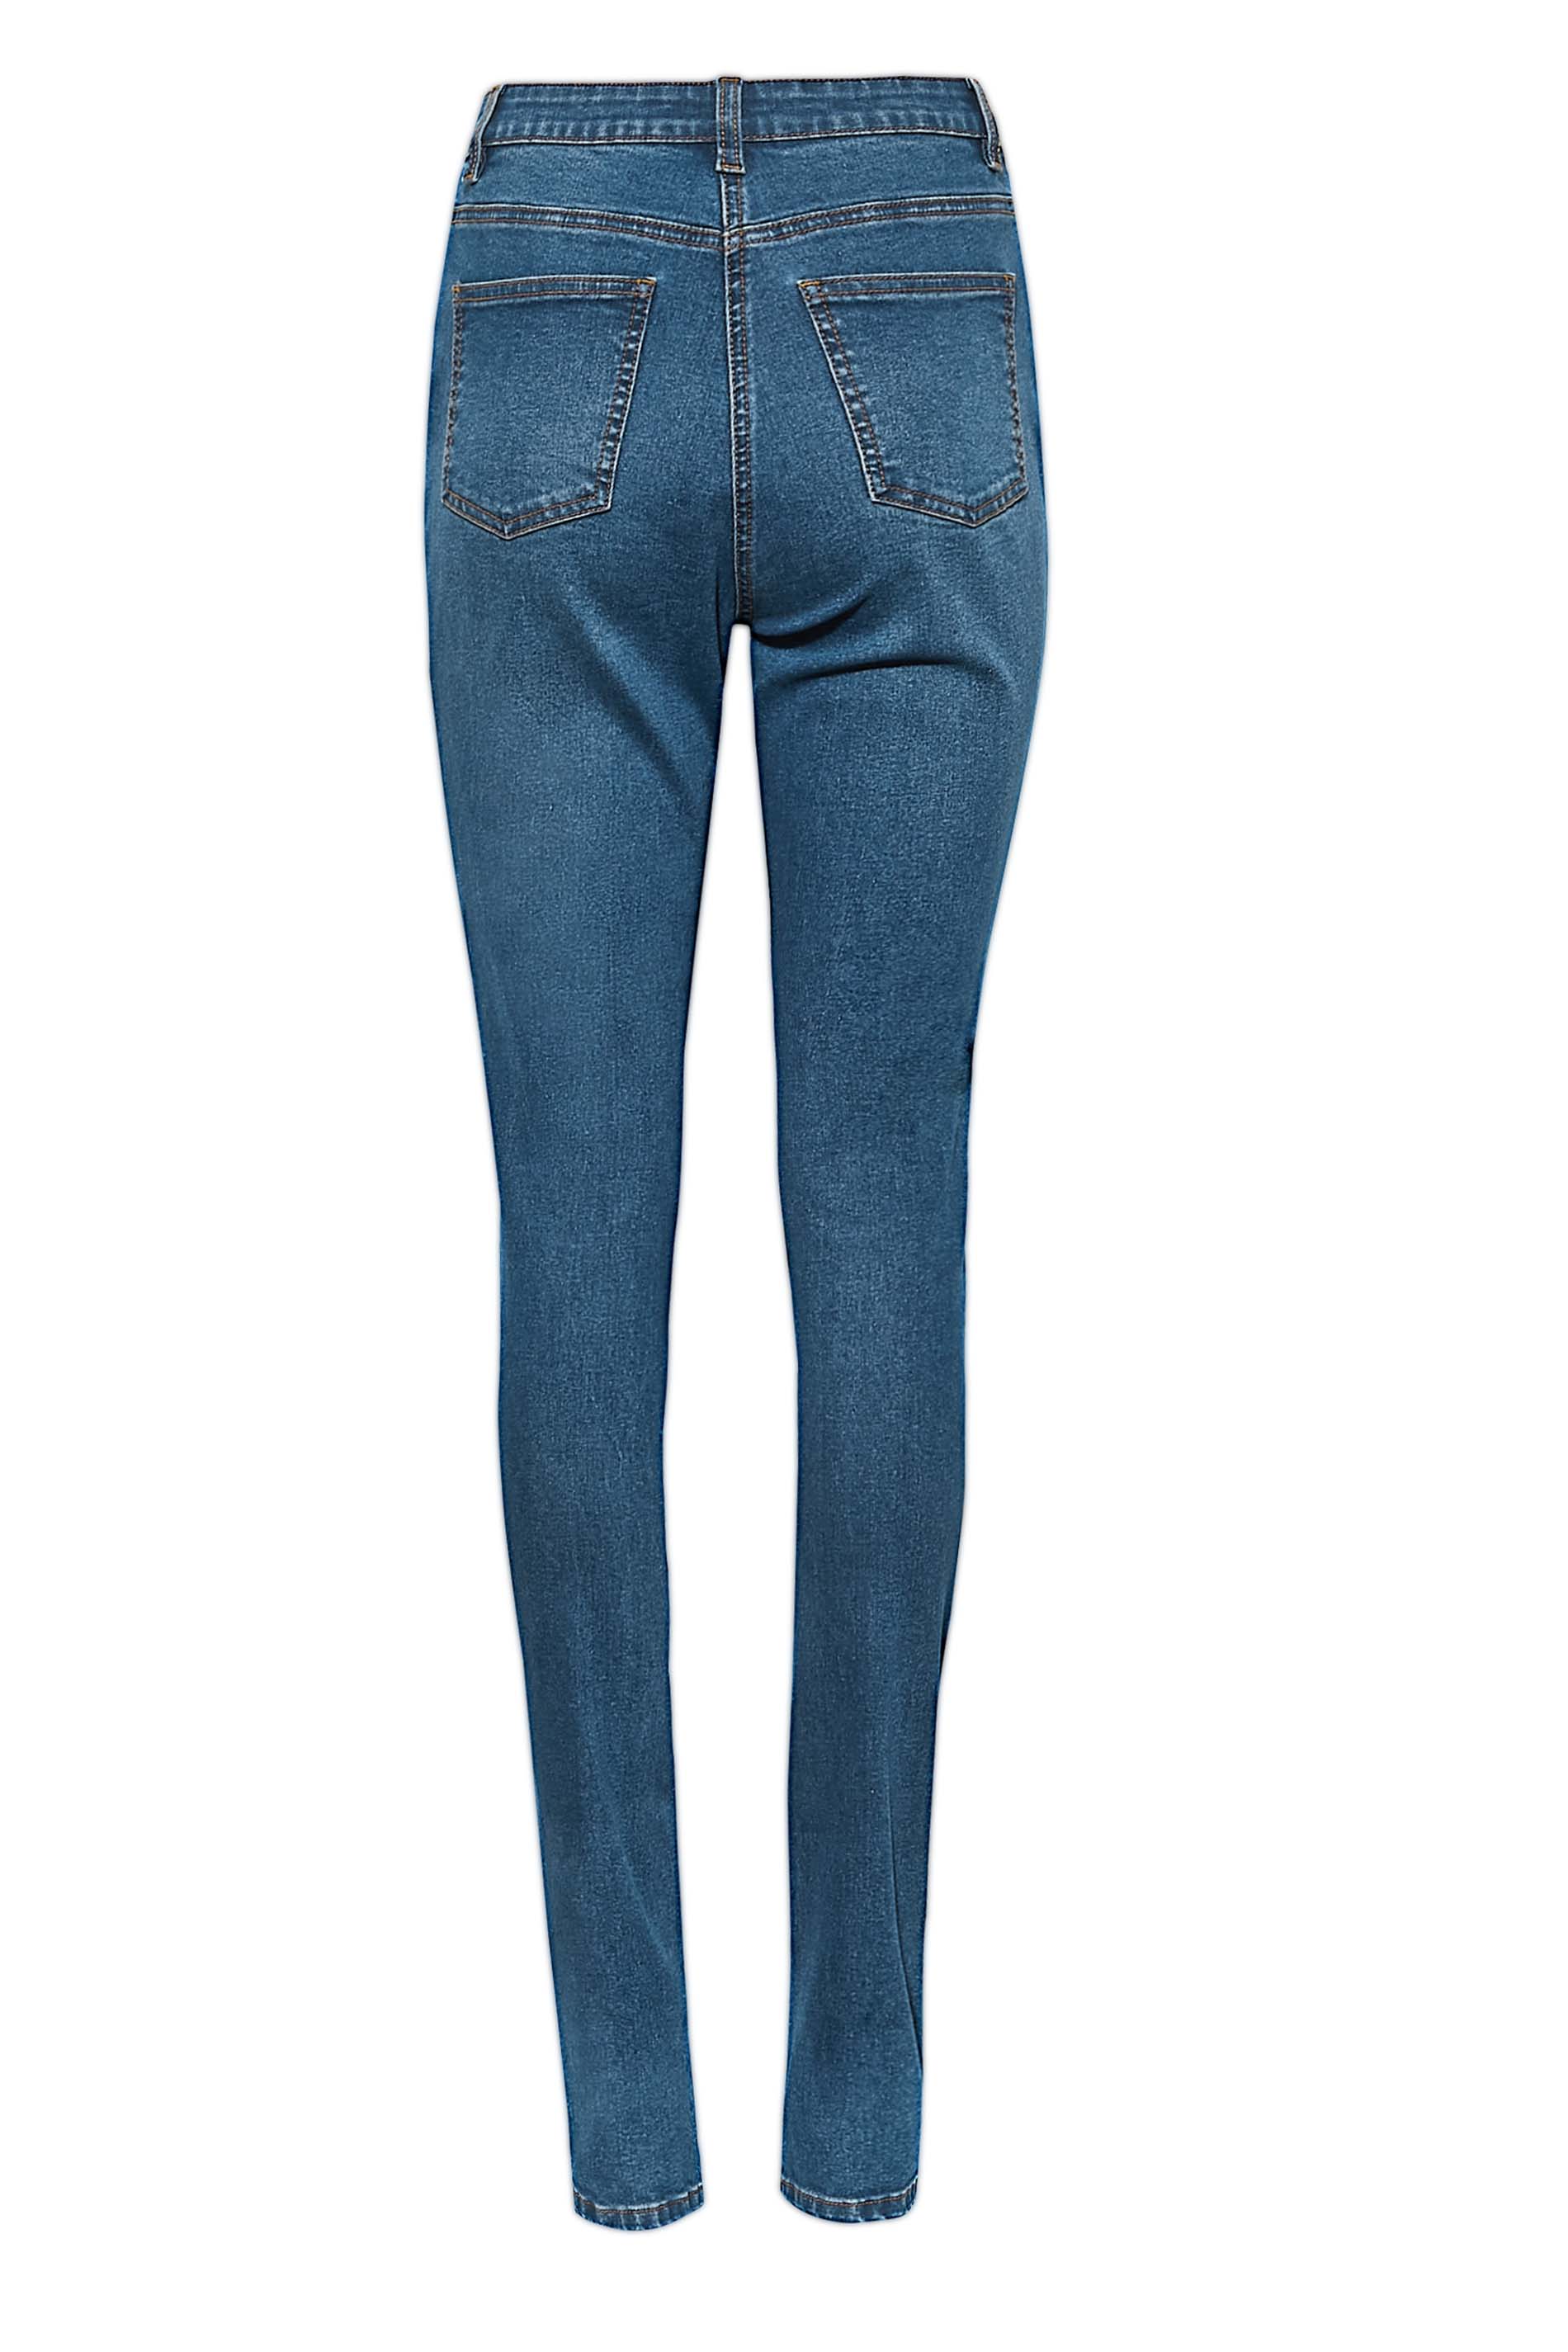 LTS Tall Women's Mid Blue Distressed AVA Skinny Jeans